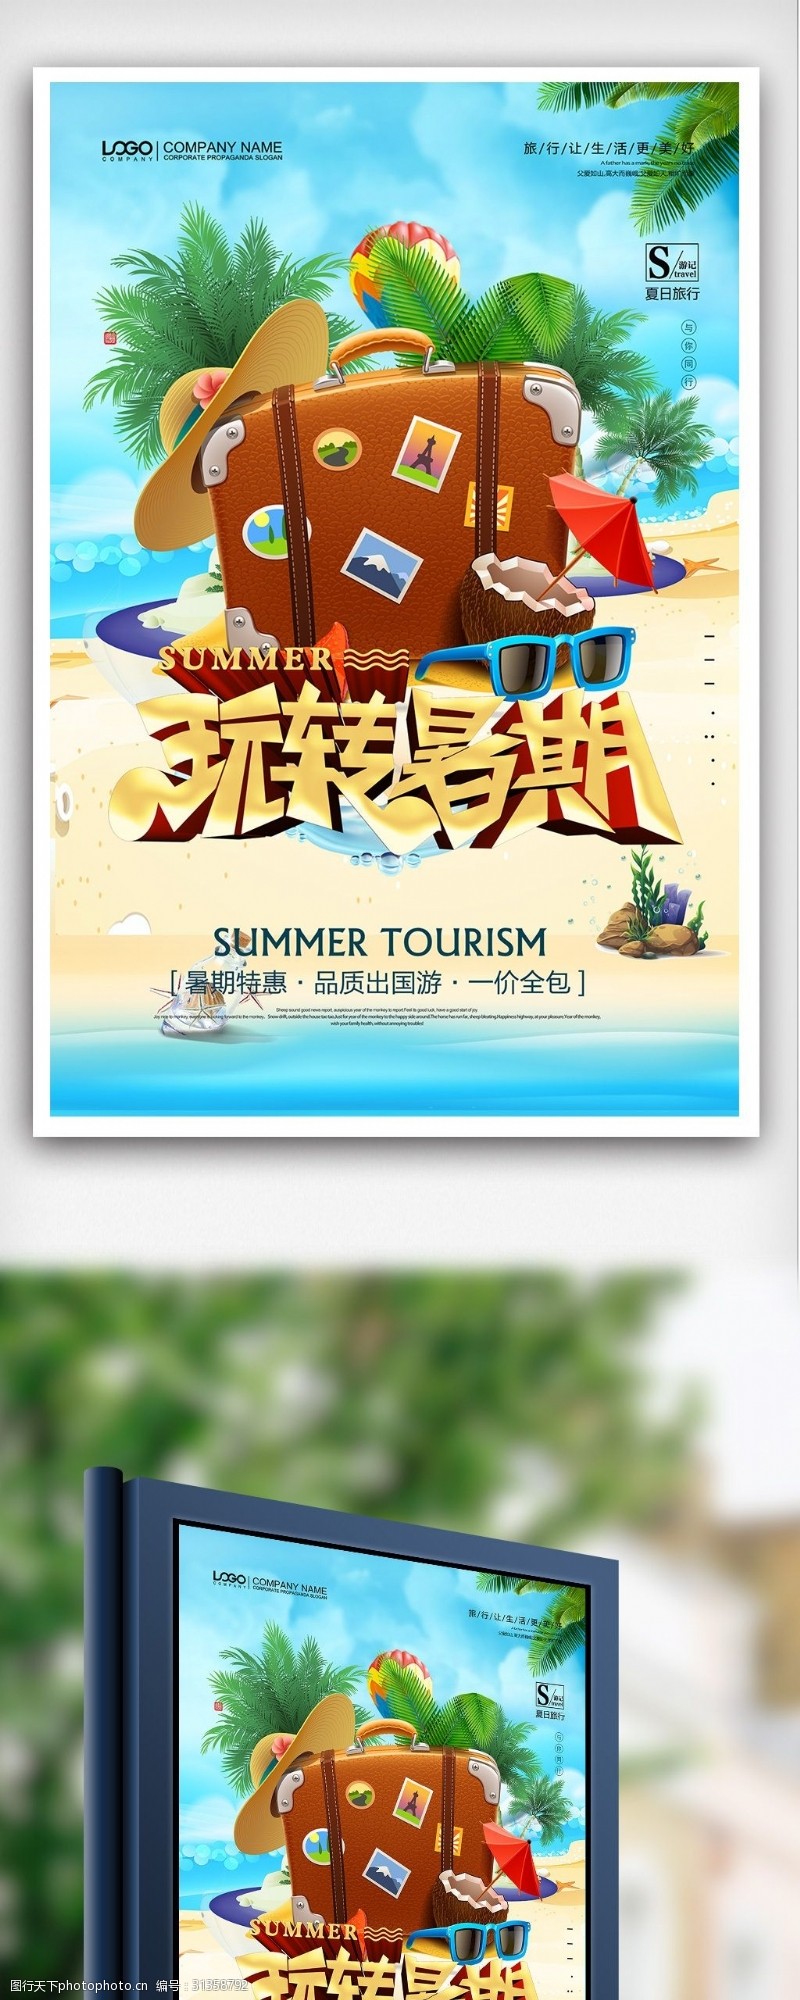 欢乐如一简约清新玩转暑期旅游海报